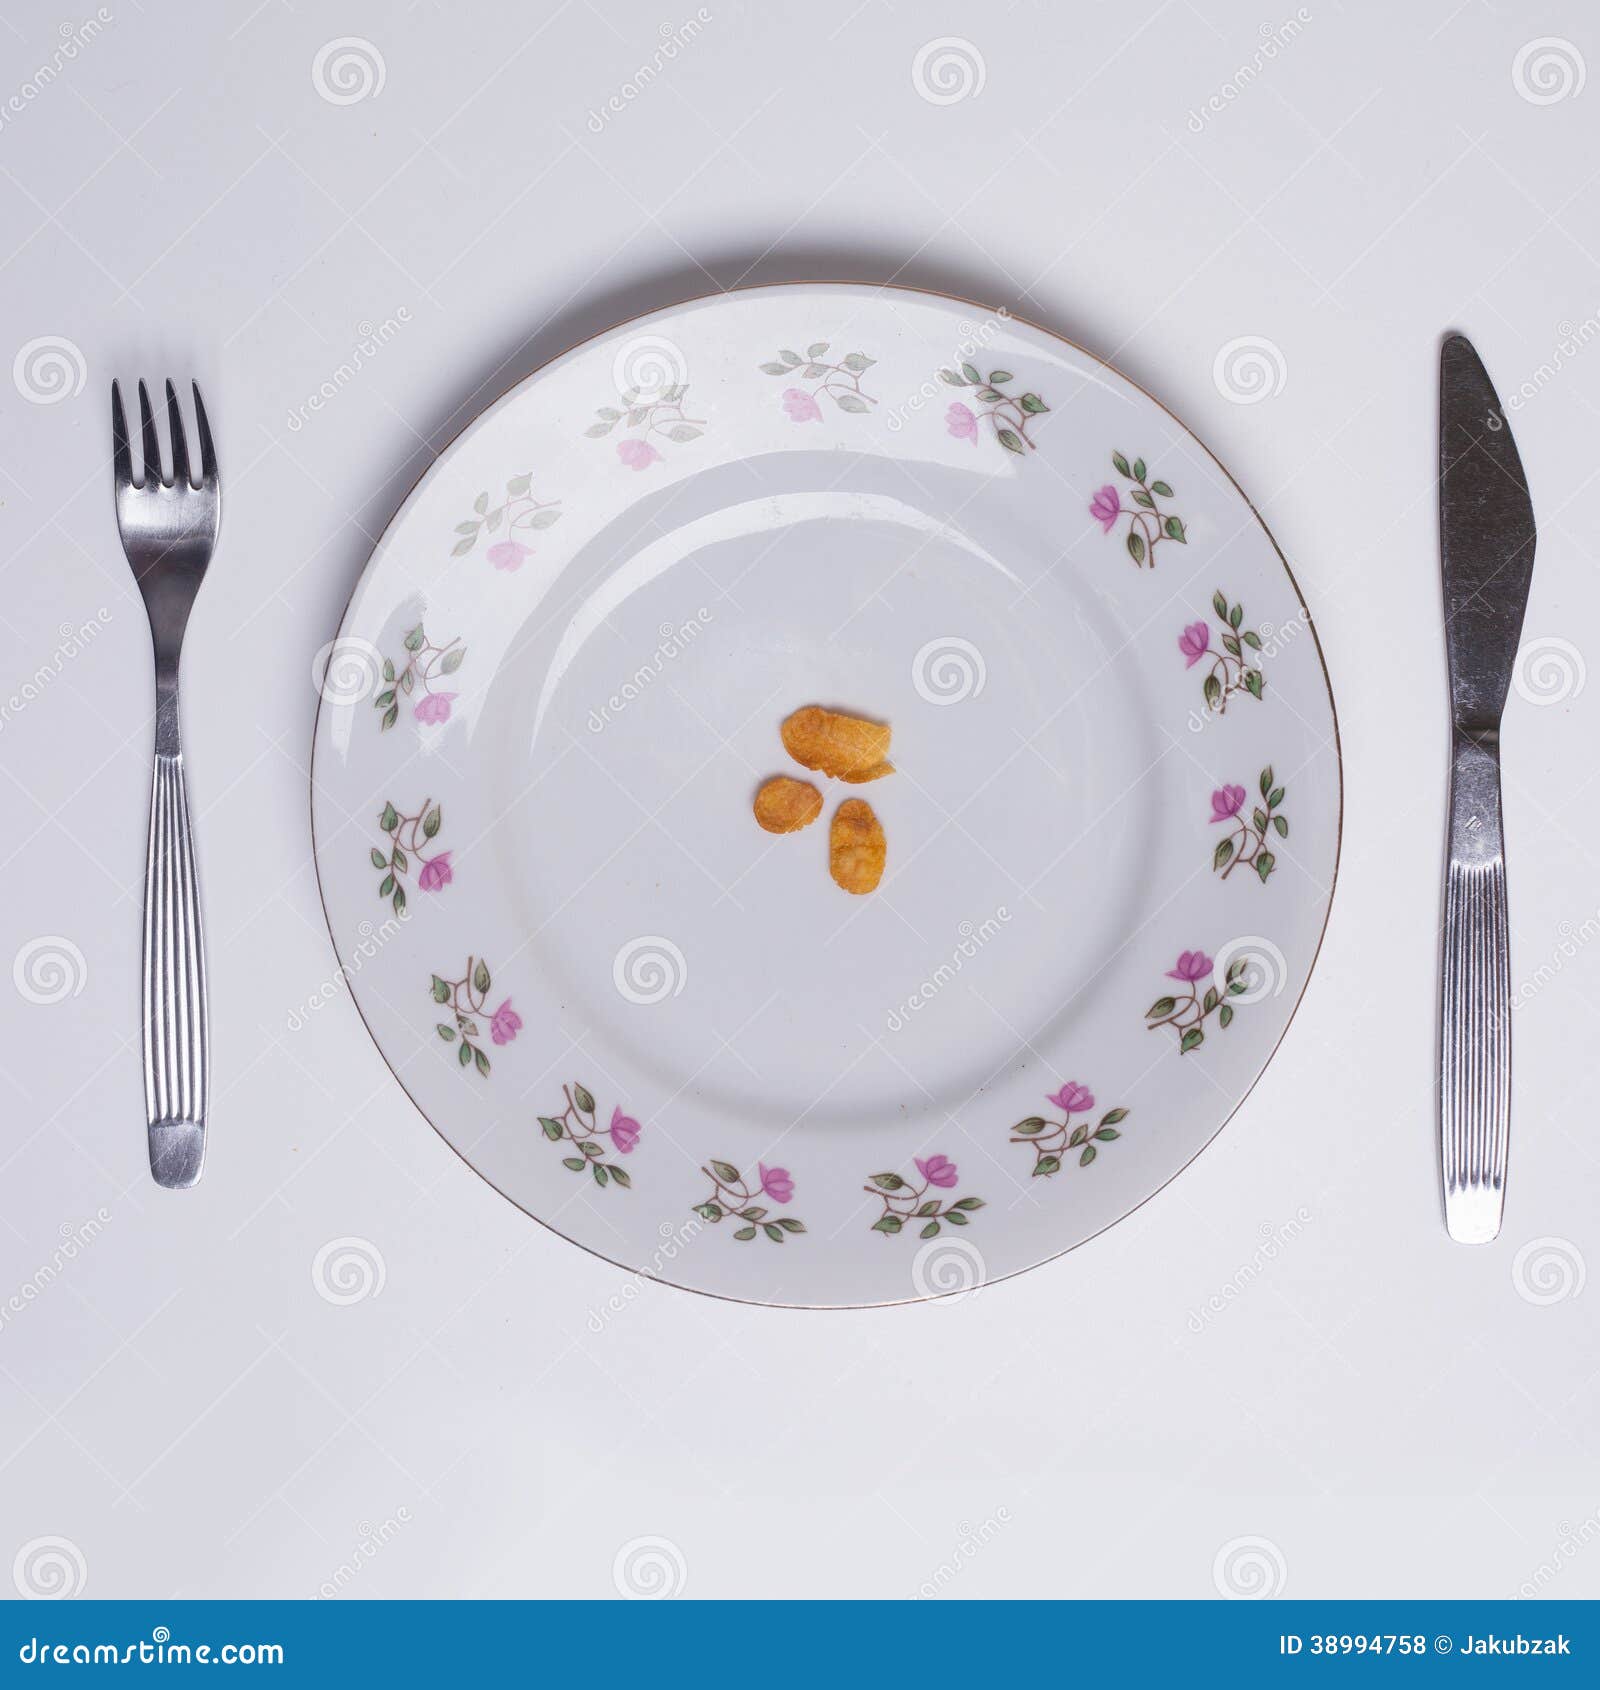 single-cornflake-plate-symbol-famines-poverty-isola-isolated-white-background-38994758.jpg